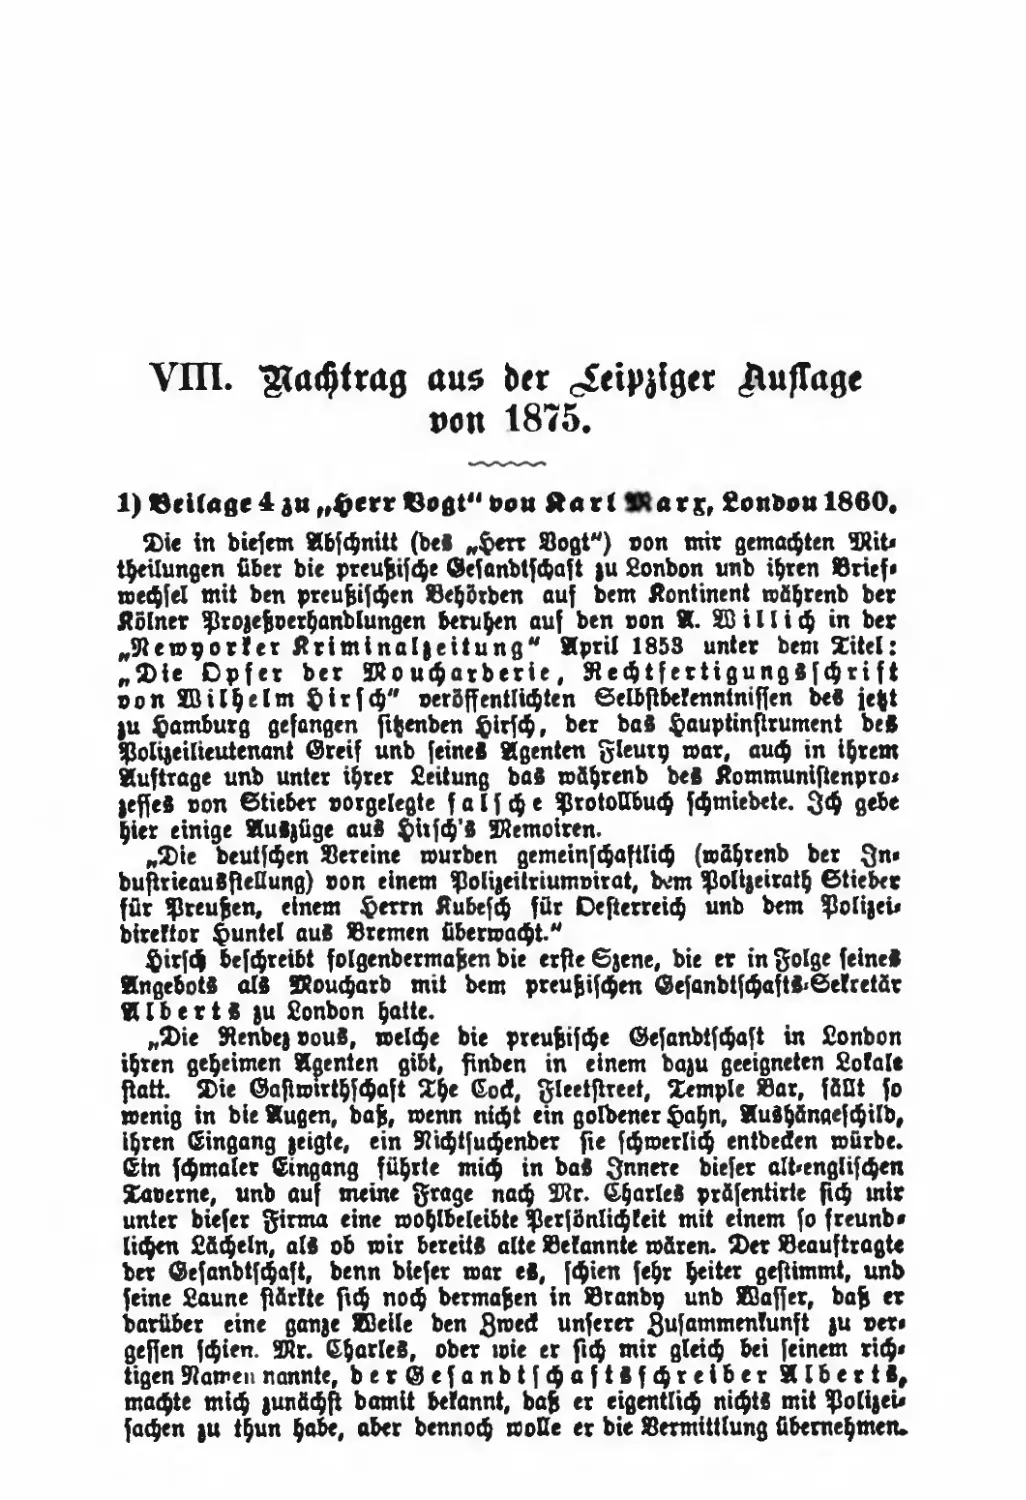 VIII. Nachtrag aus der Leipziger Auflage von 1875